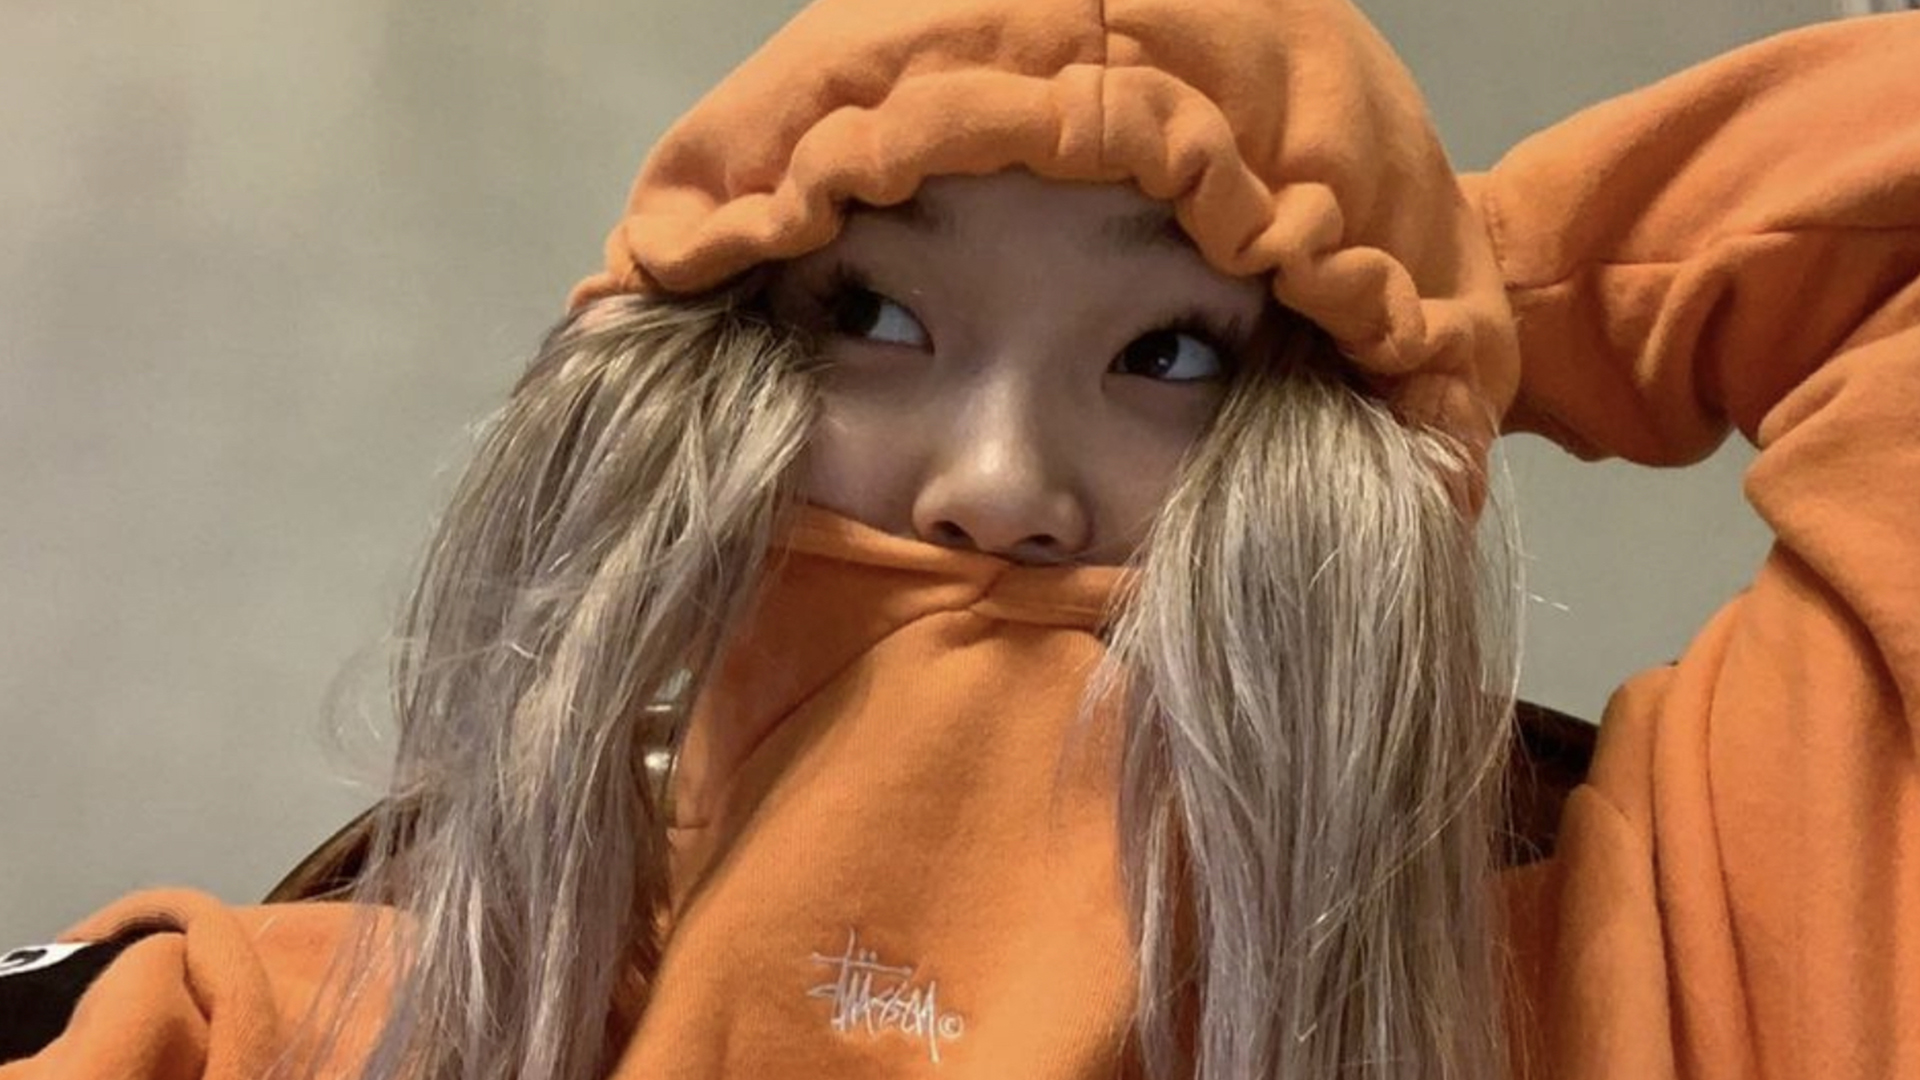 Chloe Kim wearing a hoodie in a selfie